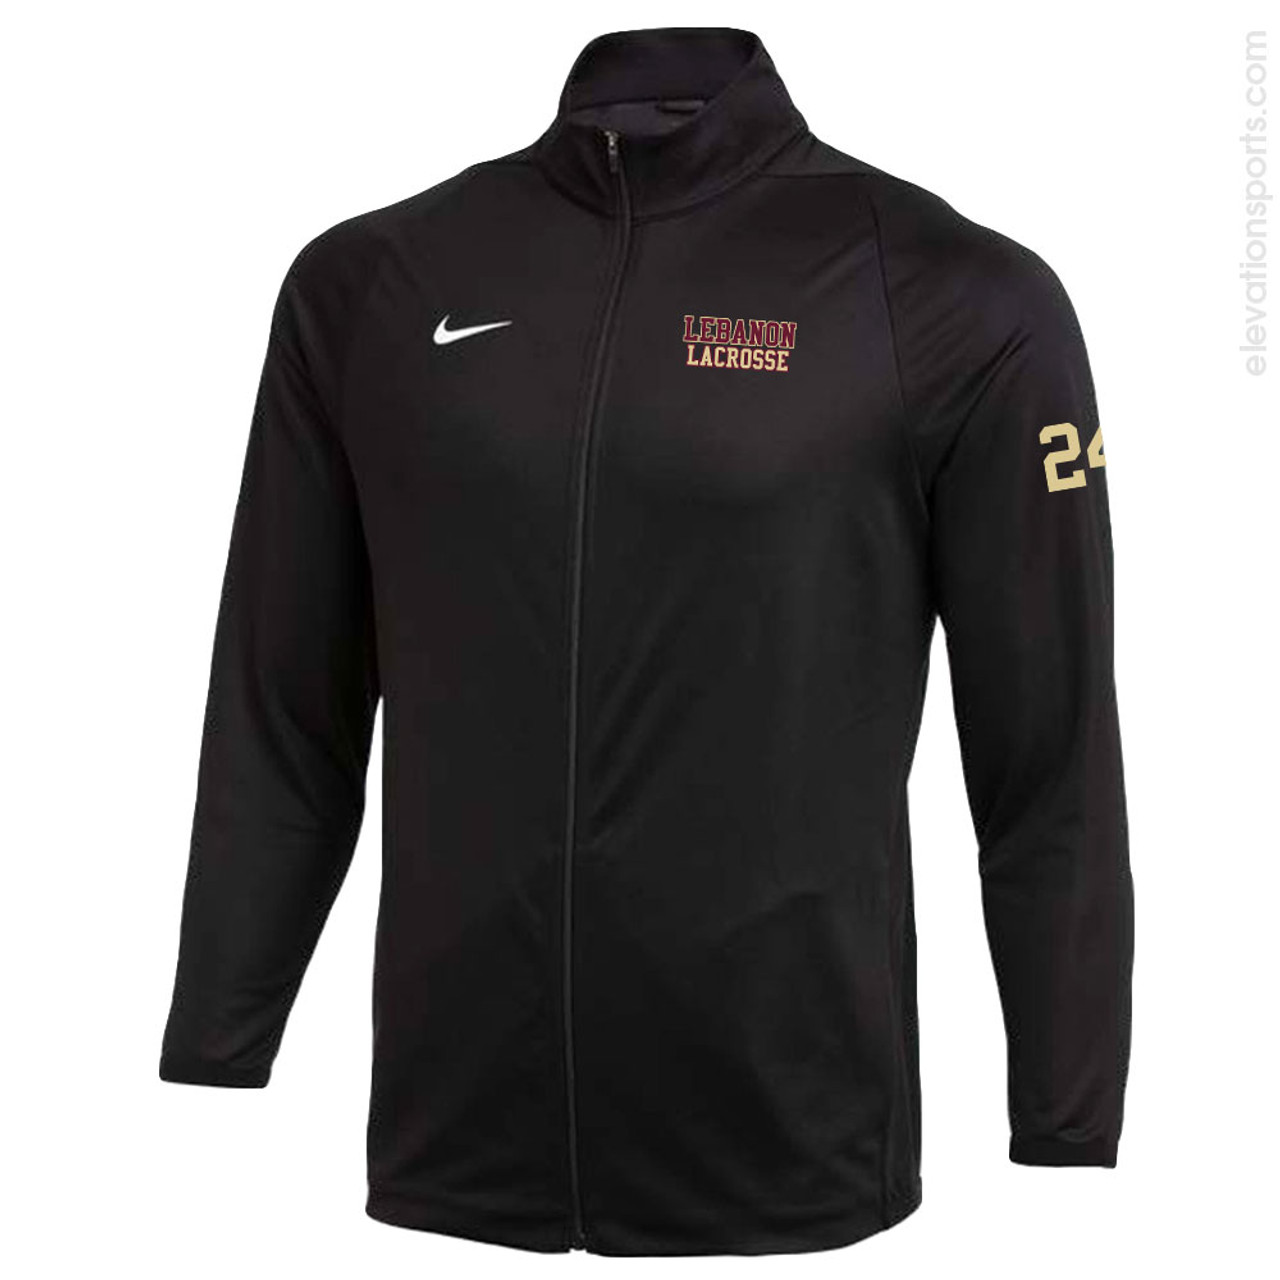 New Maroon XL Nike Baseball Warm Up Jacket